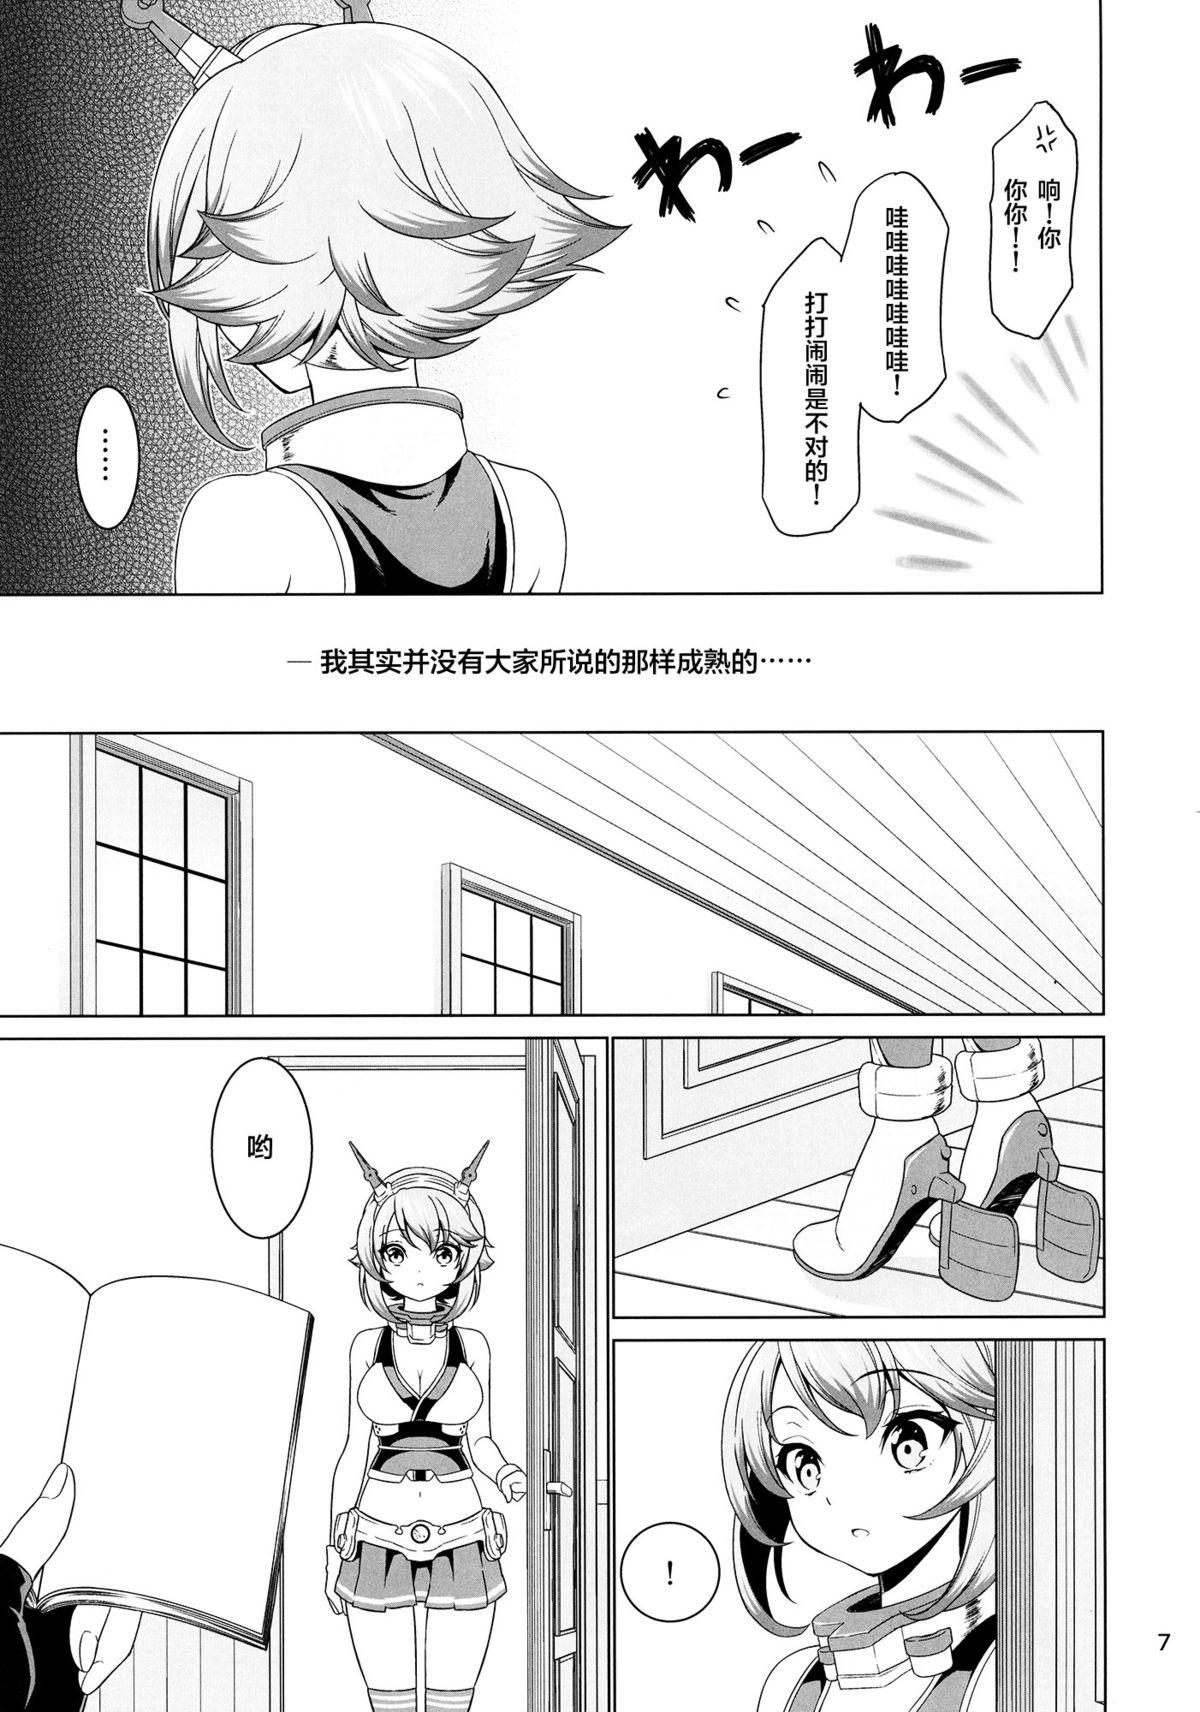 Flagra "Onee-san" ja Irarenai - Kantai collection Spy Camera - Page 7